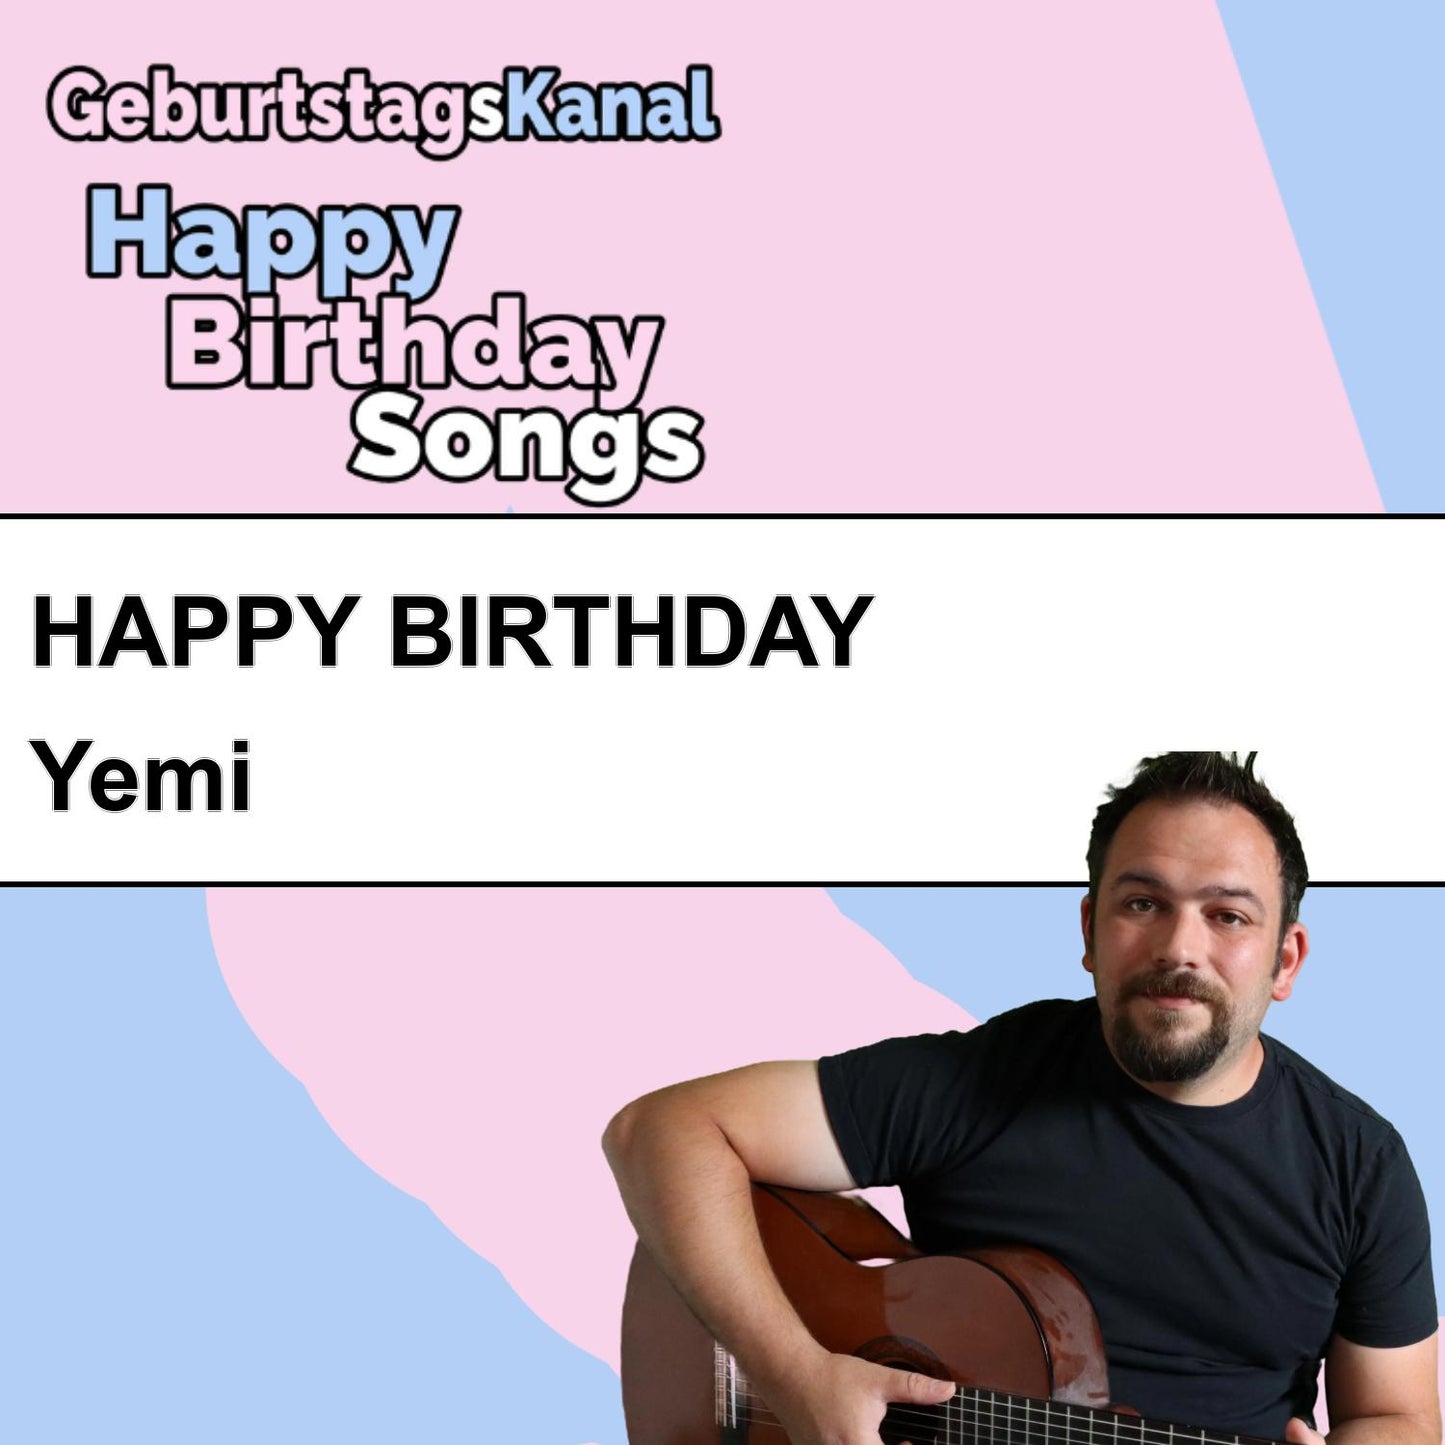 Produktbild Happy Birthday to you Yemi mit Wunschgrußbotschaft